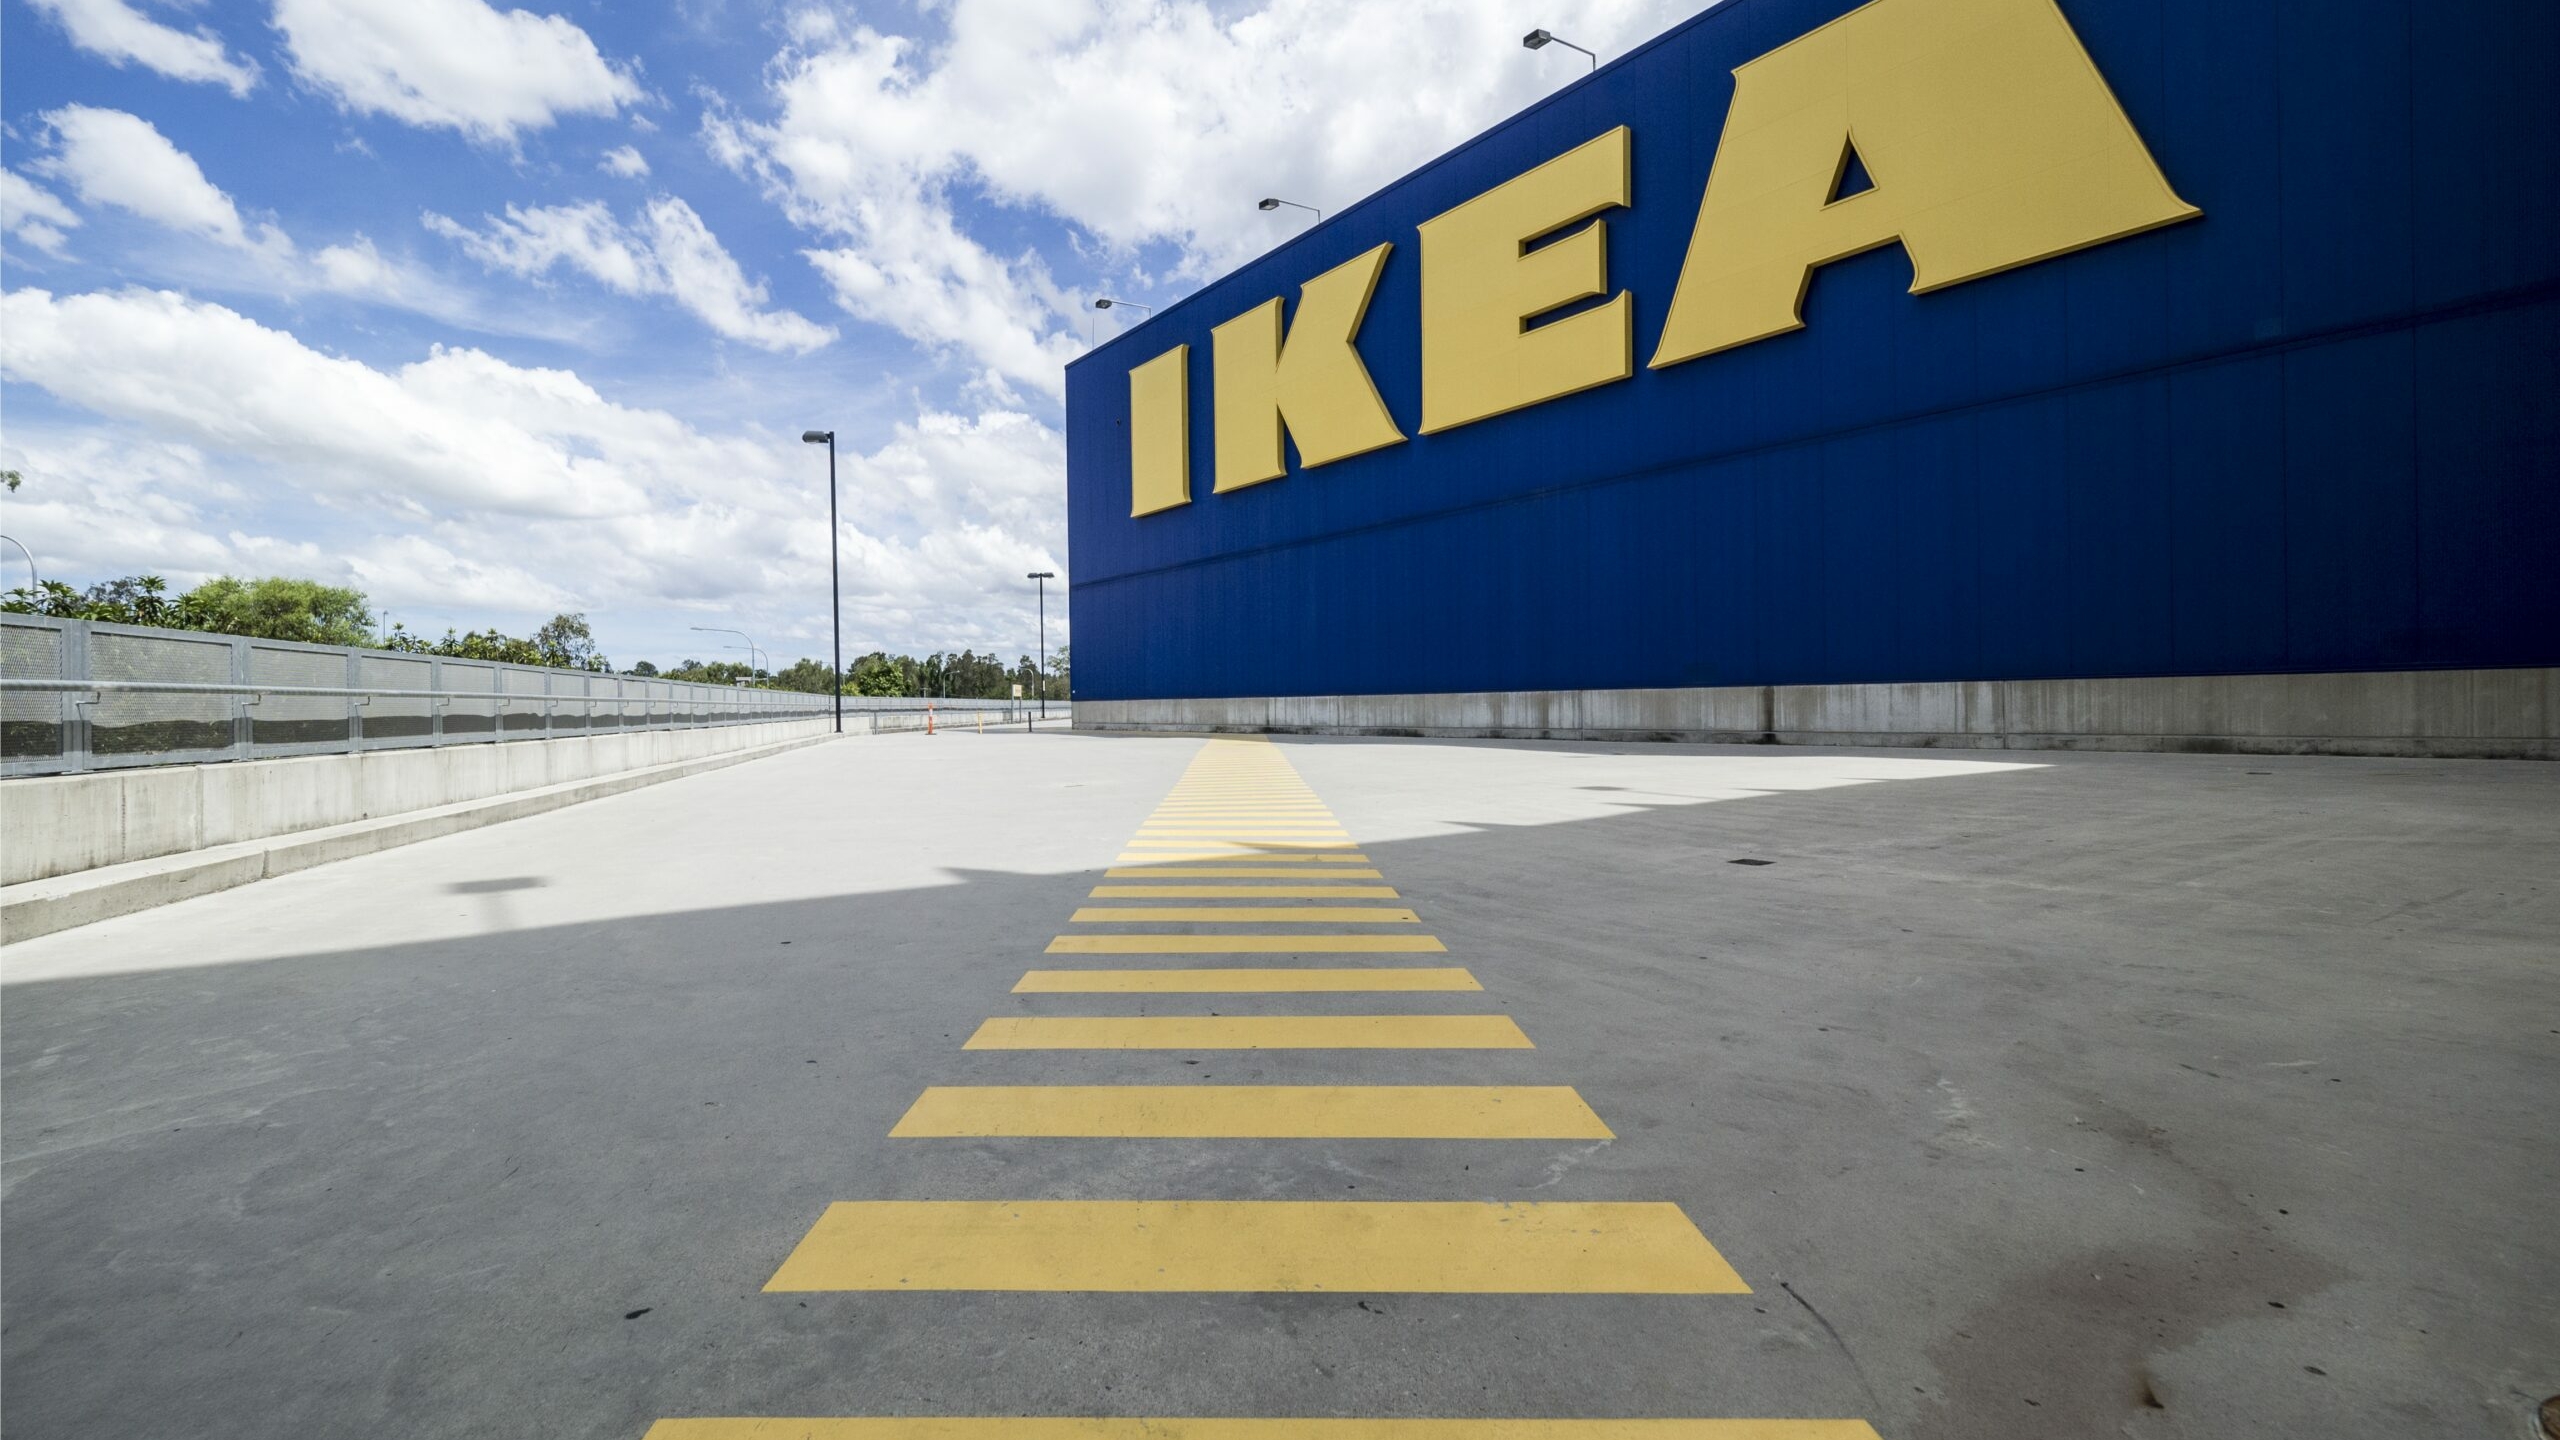 Производство на бывшем заводе IKEA в Ленобласти перезапустили под новым брендом